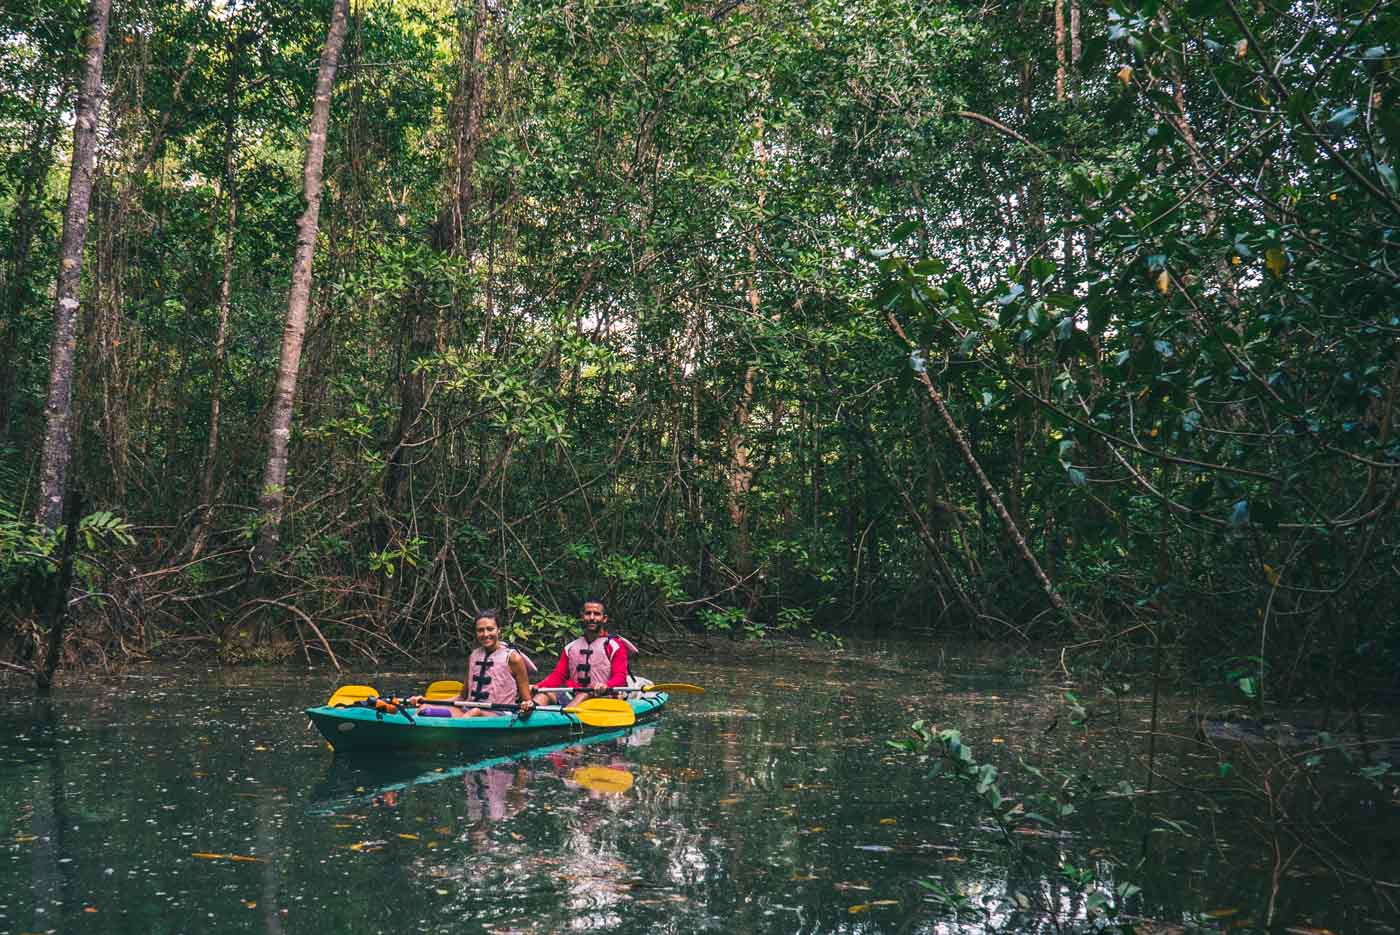 哥斯达黎加希门尼斯港:在奥萨半岛的红树林中划皮艇